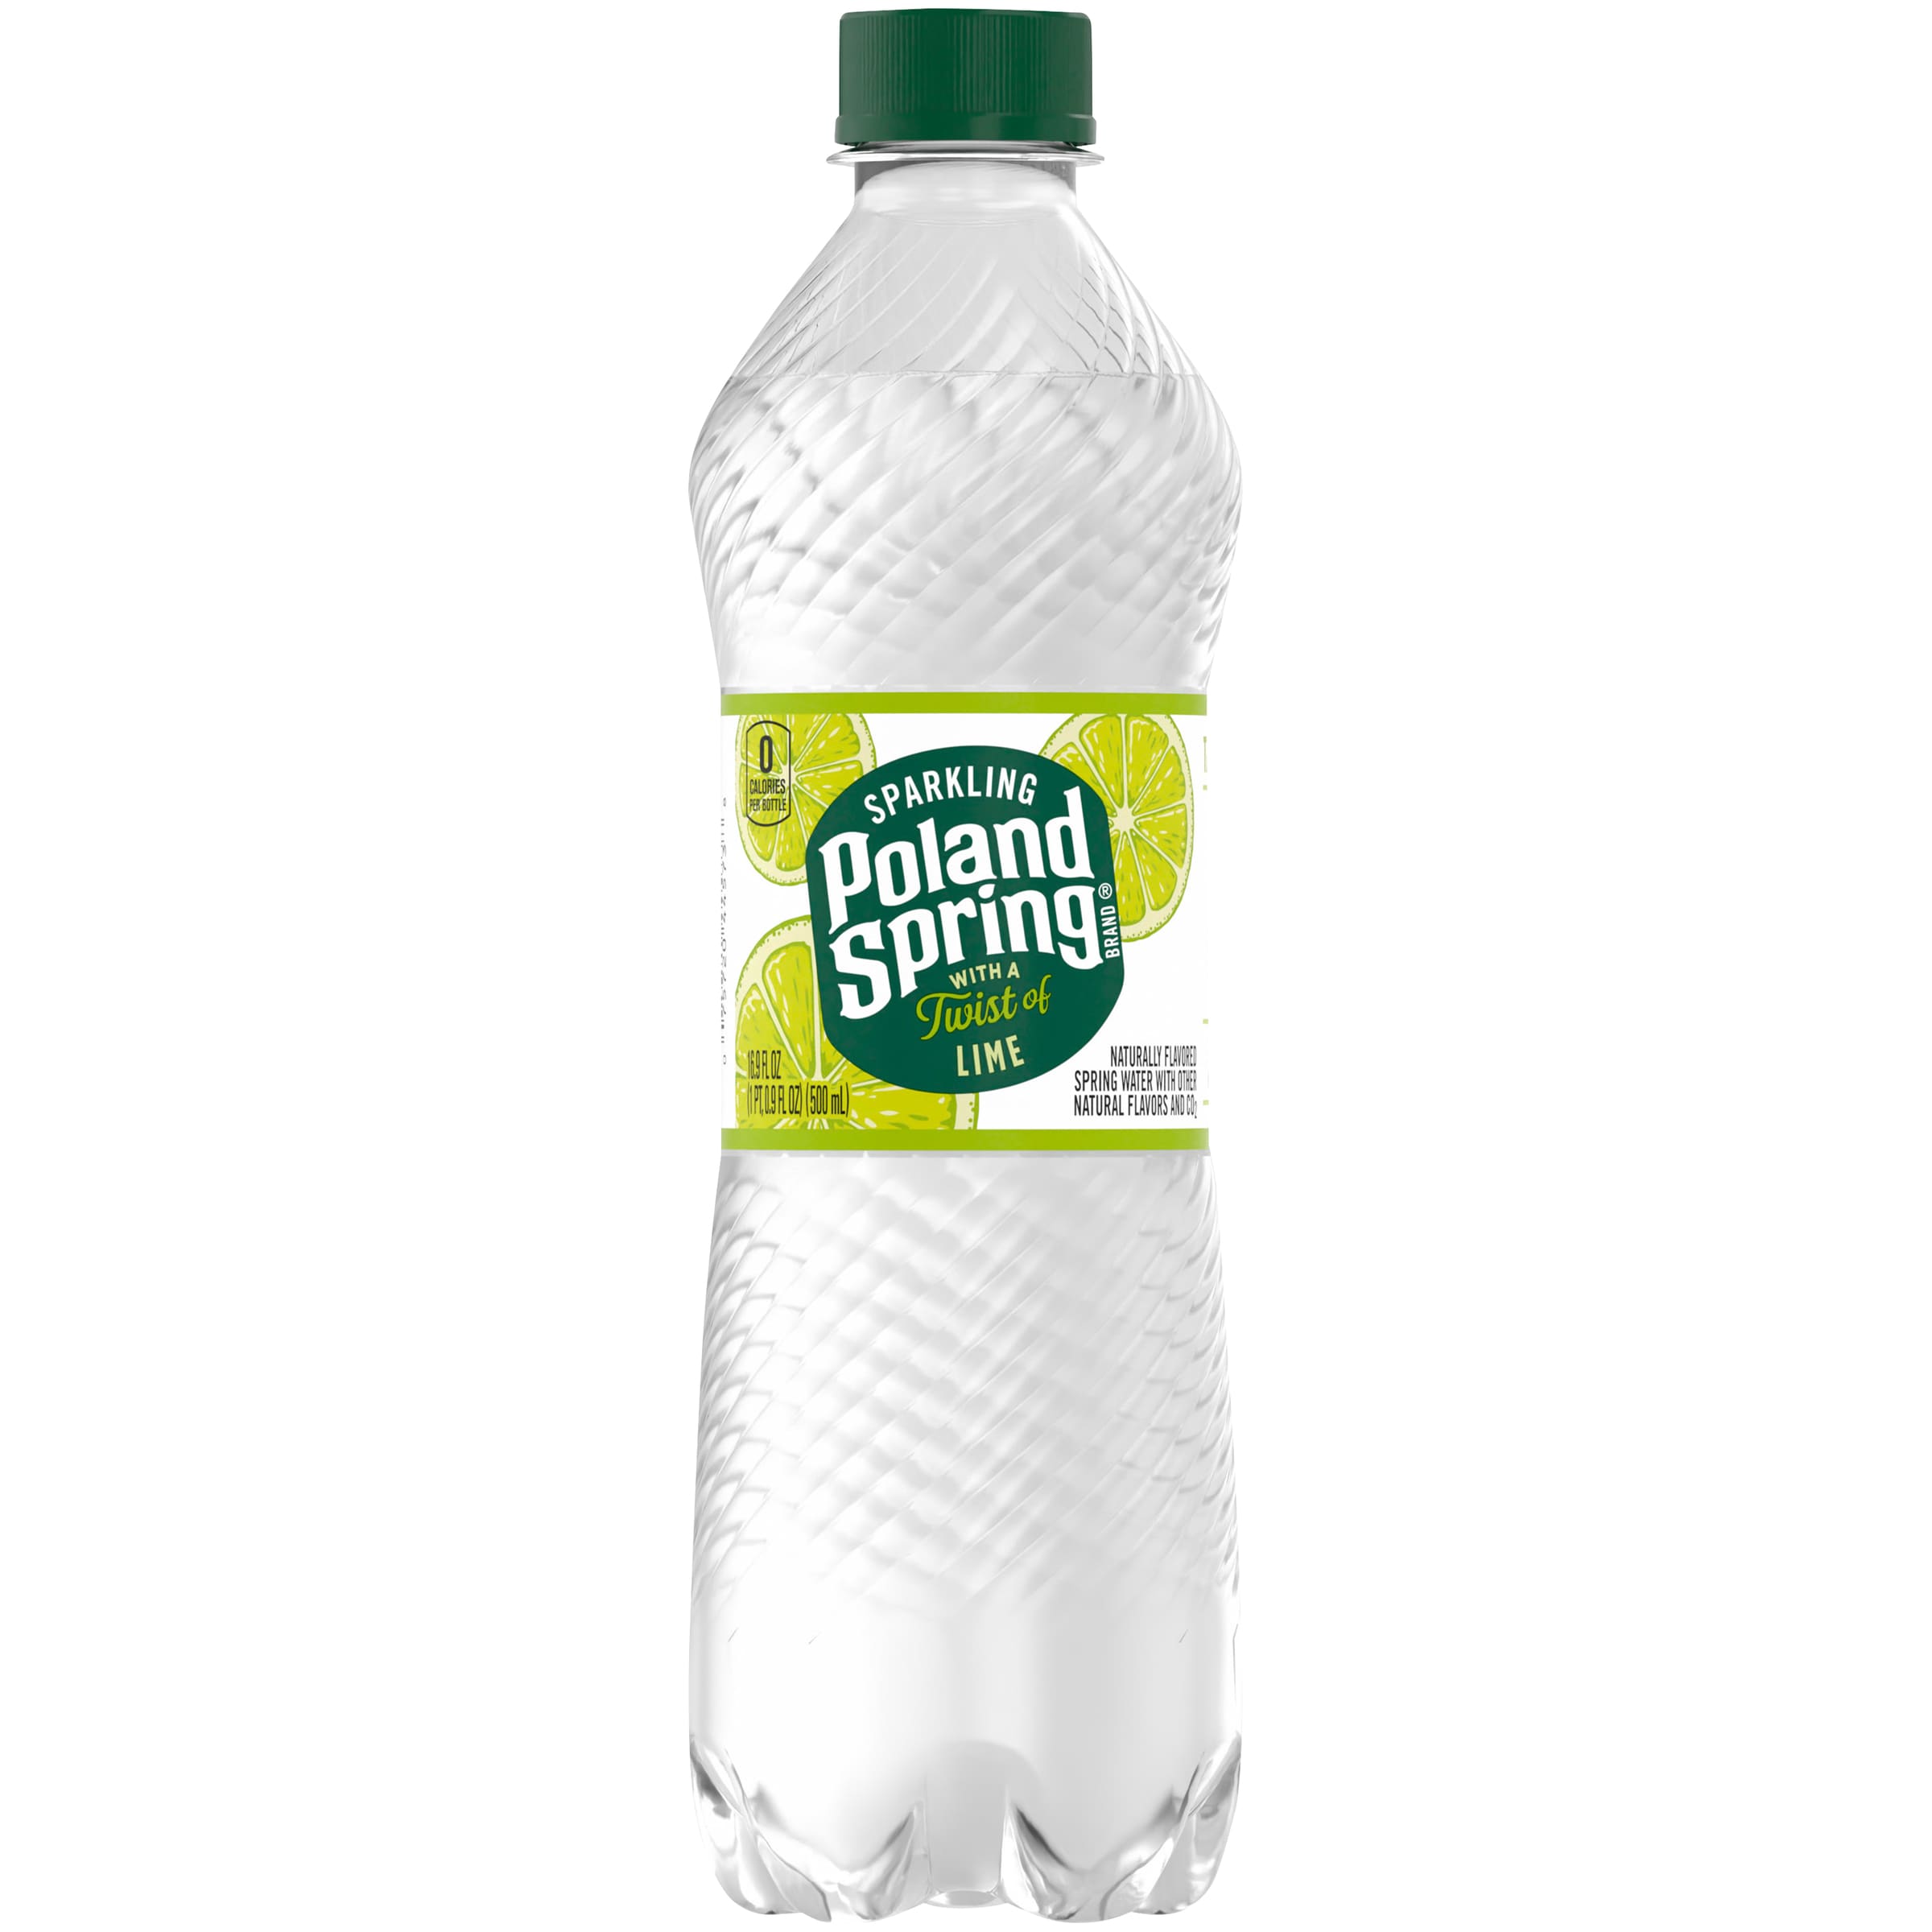 Order Poland Spring 100% Natural Spring Water, Plastic Bottles